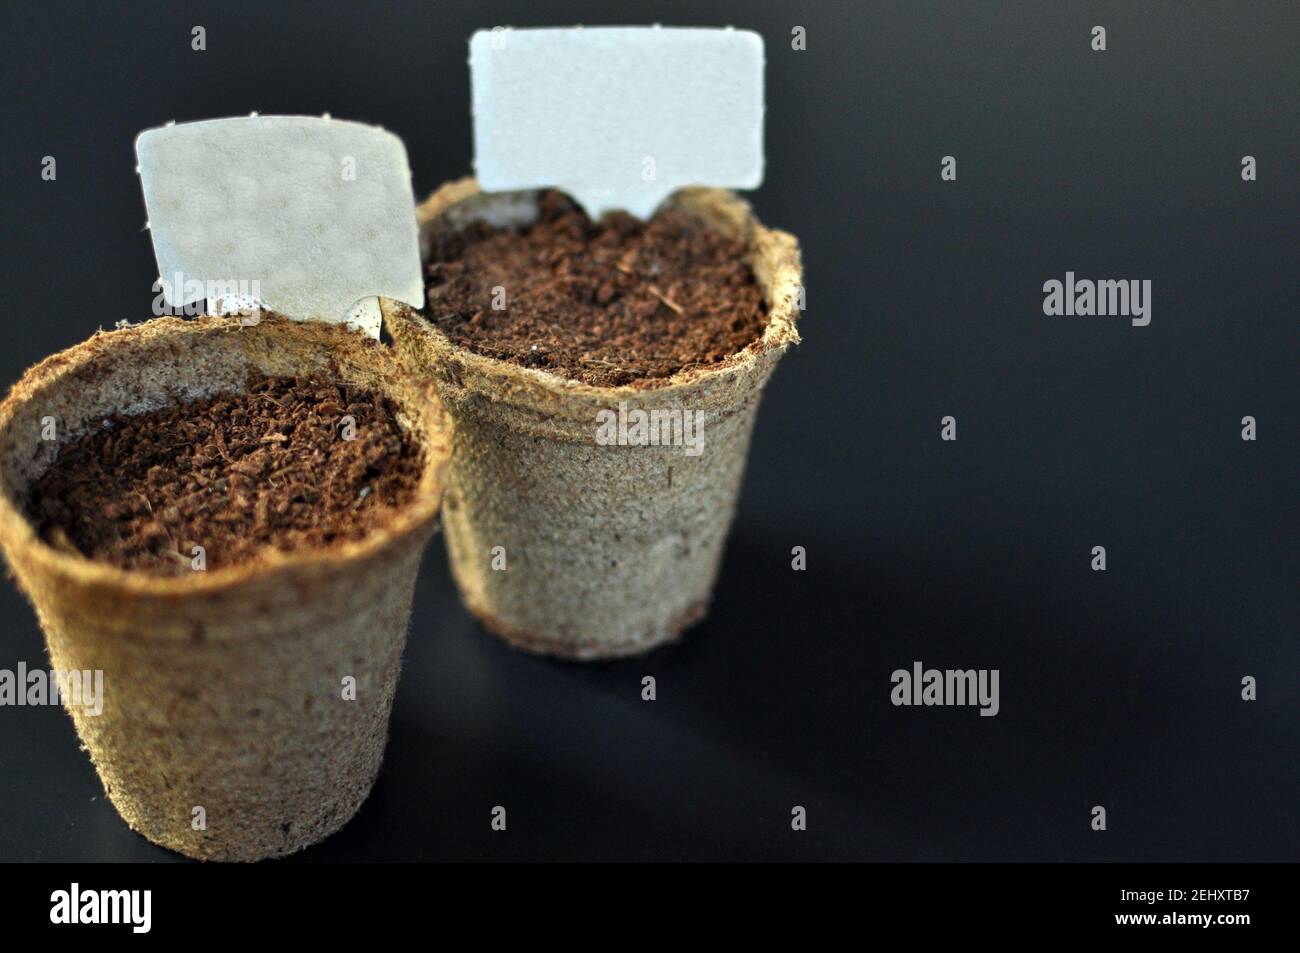 Pentole con suolo per piantare piantine con piastre indicatrici su sfondo nero con spazio di testo Foto Stock